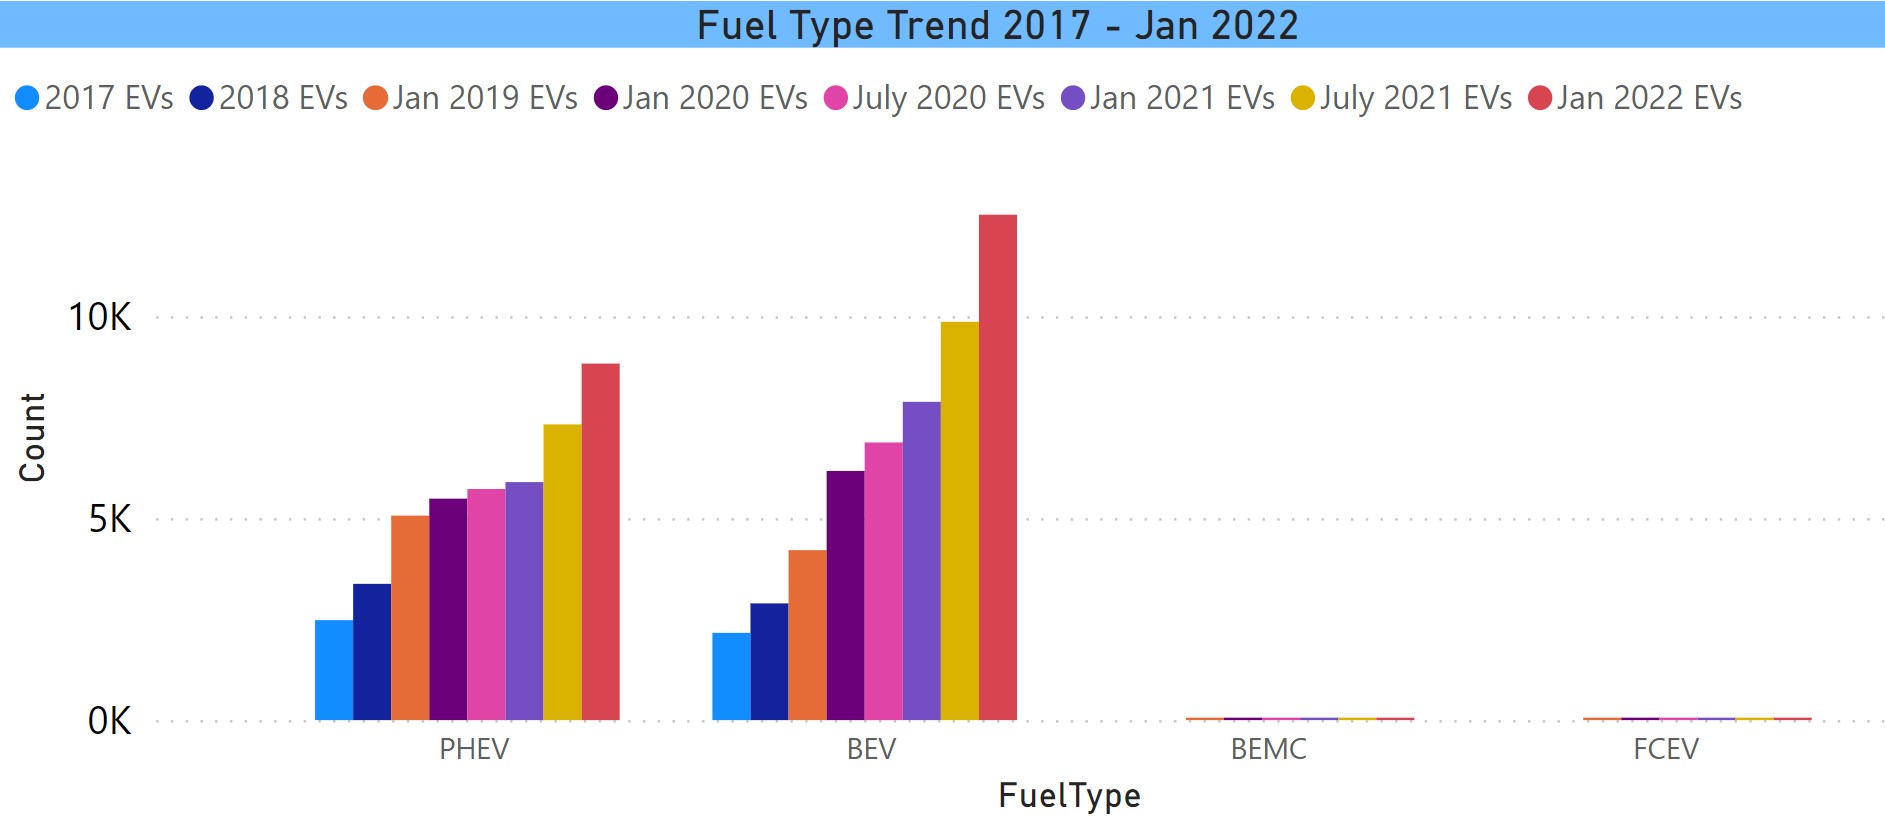 Fuel Type Trend thru Jan 2022